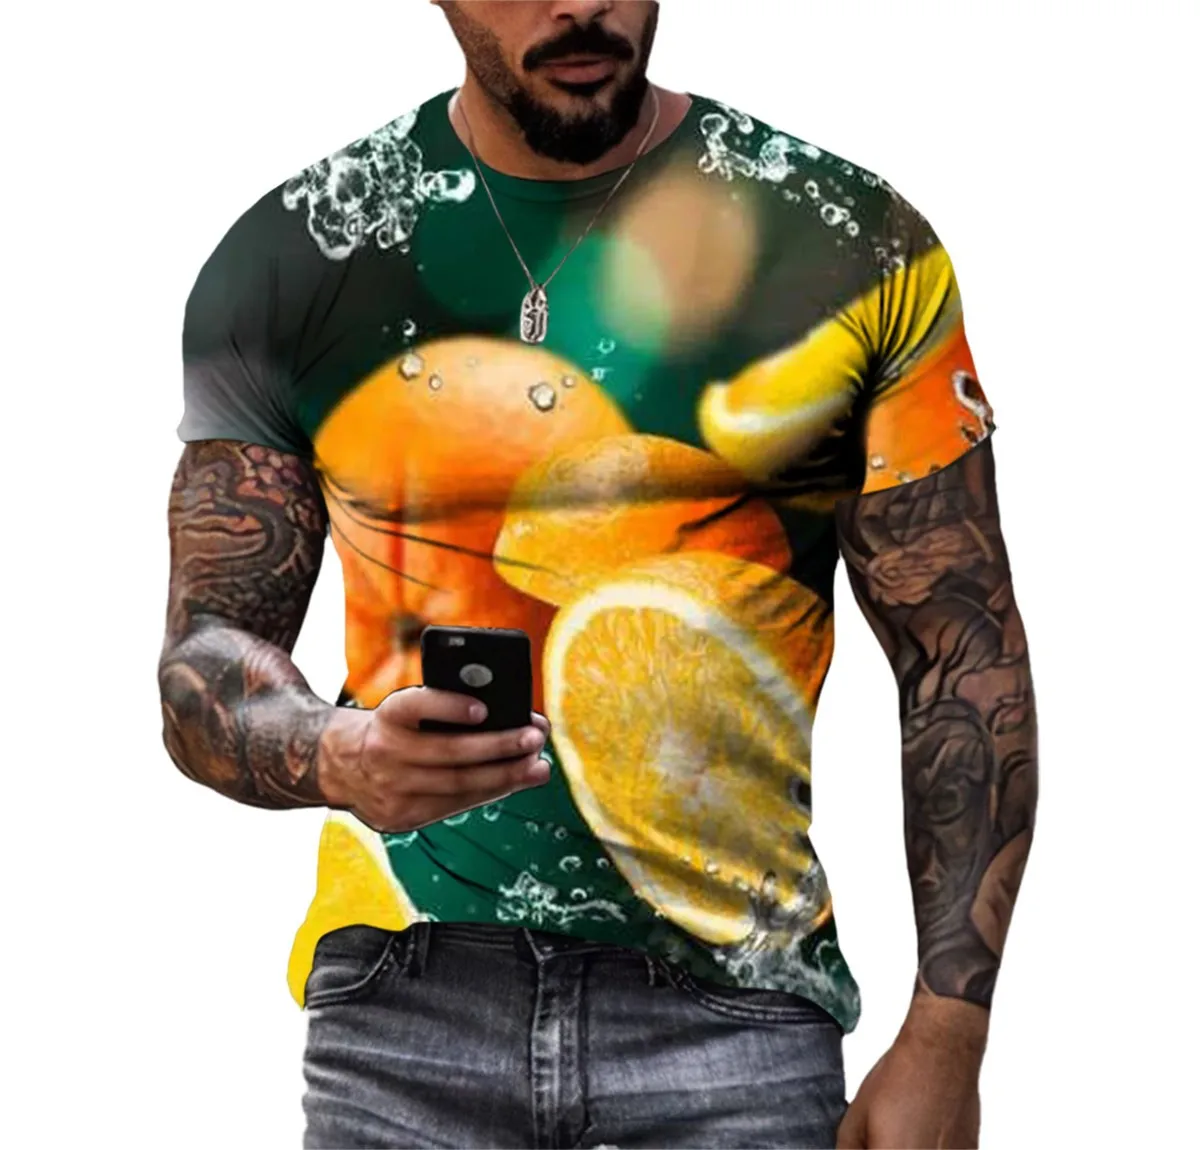 

Футболка мужская летняя с круглым вырезом, забавный топ свободного покроя с рисунком свежих фруктов, с 3d принтом, с коротким рукавом